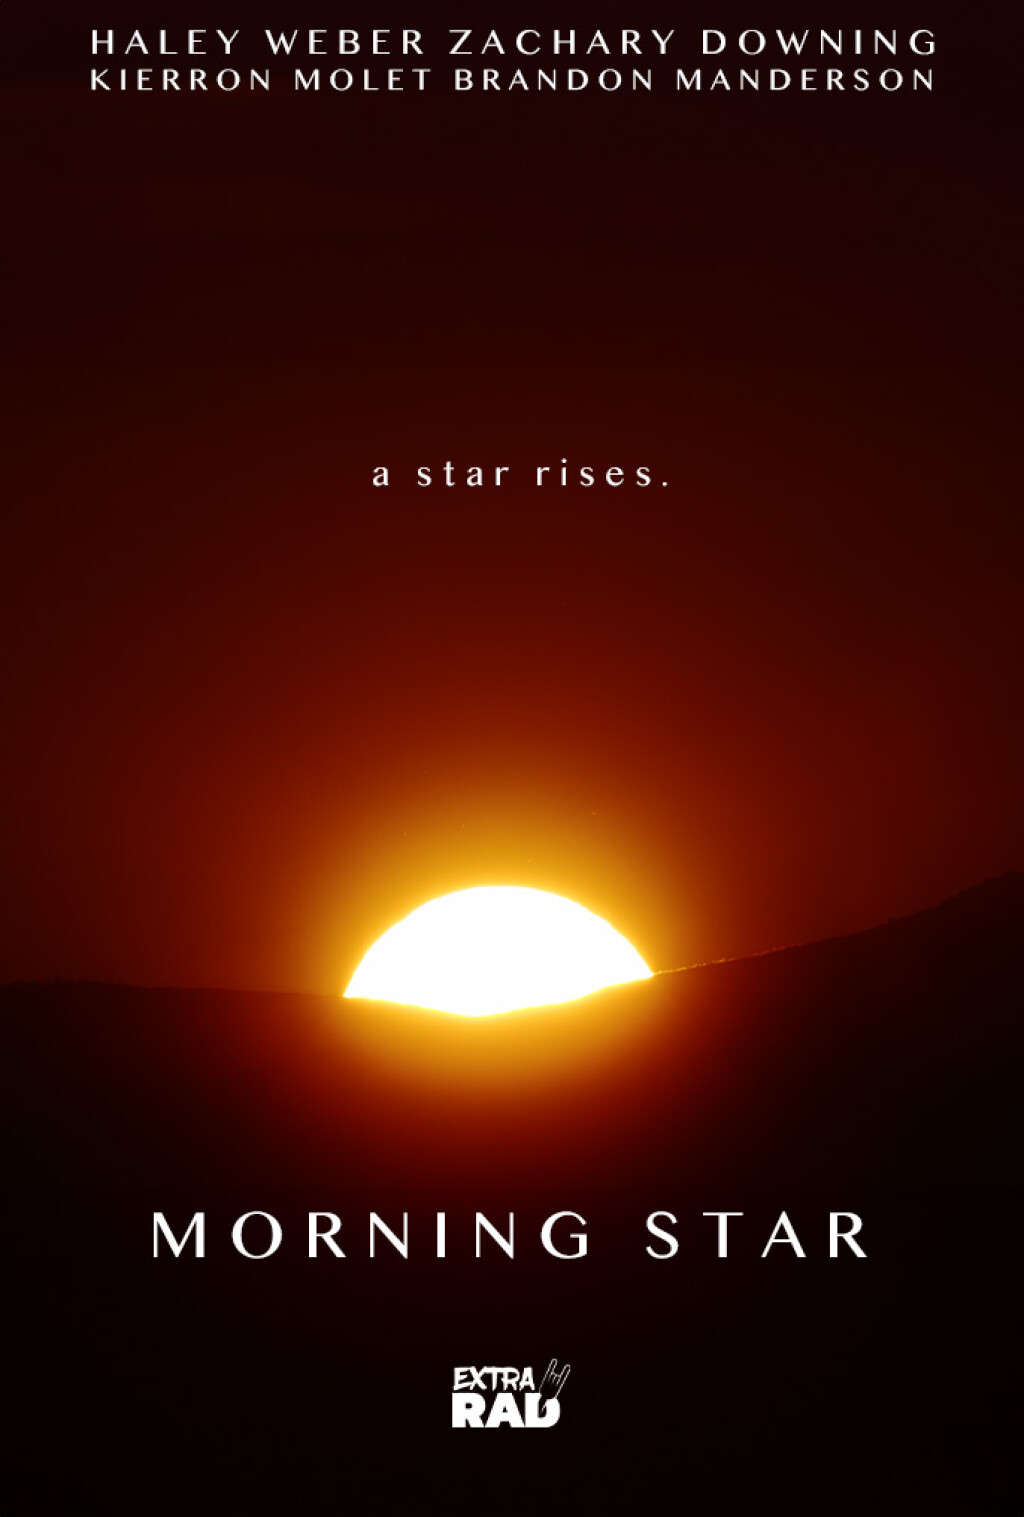 Filmposter for Morning Star